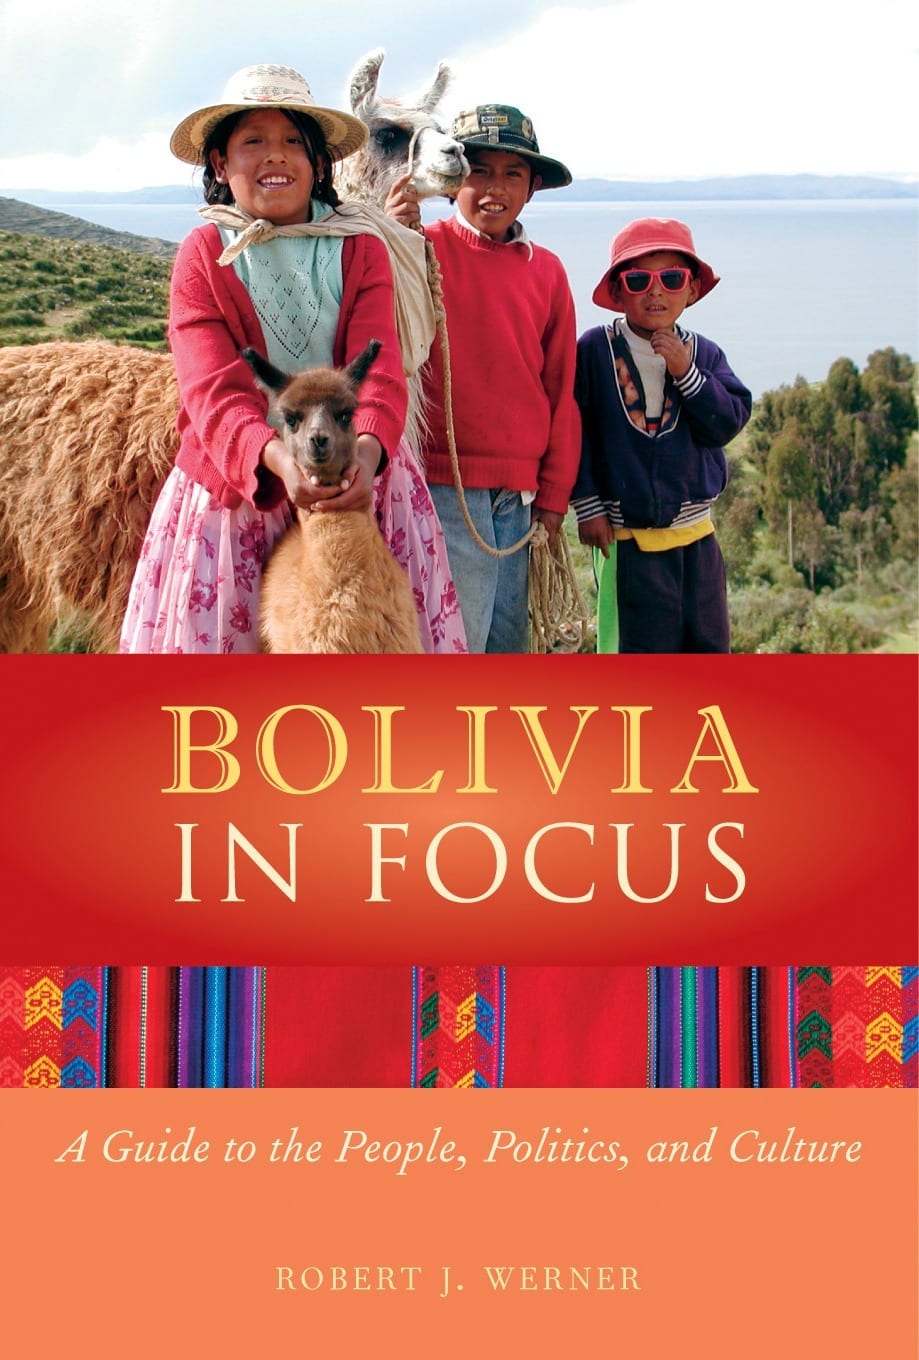 Bolivia in Focus